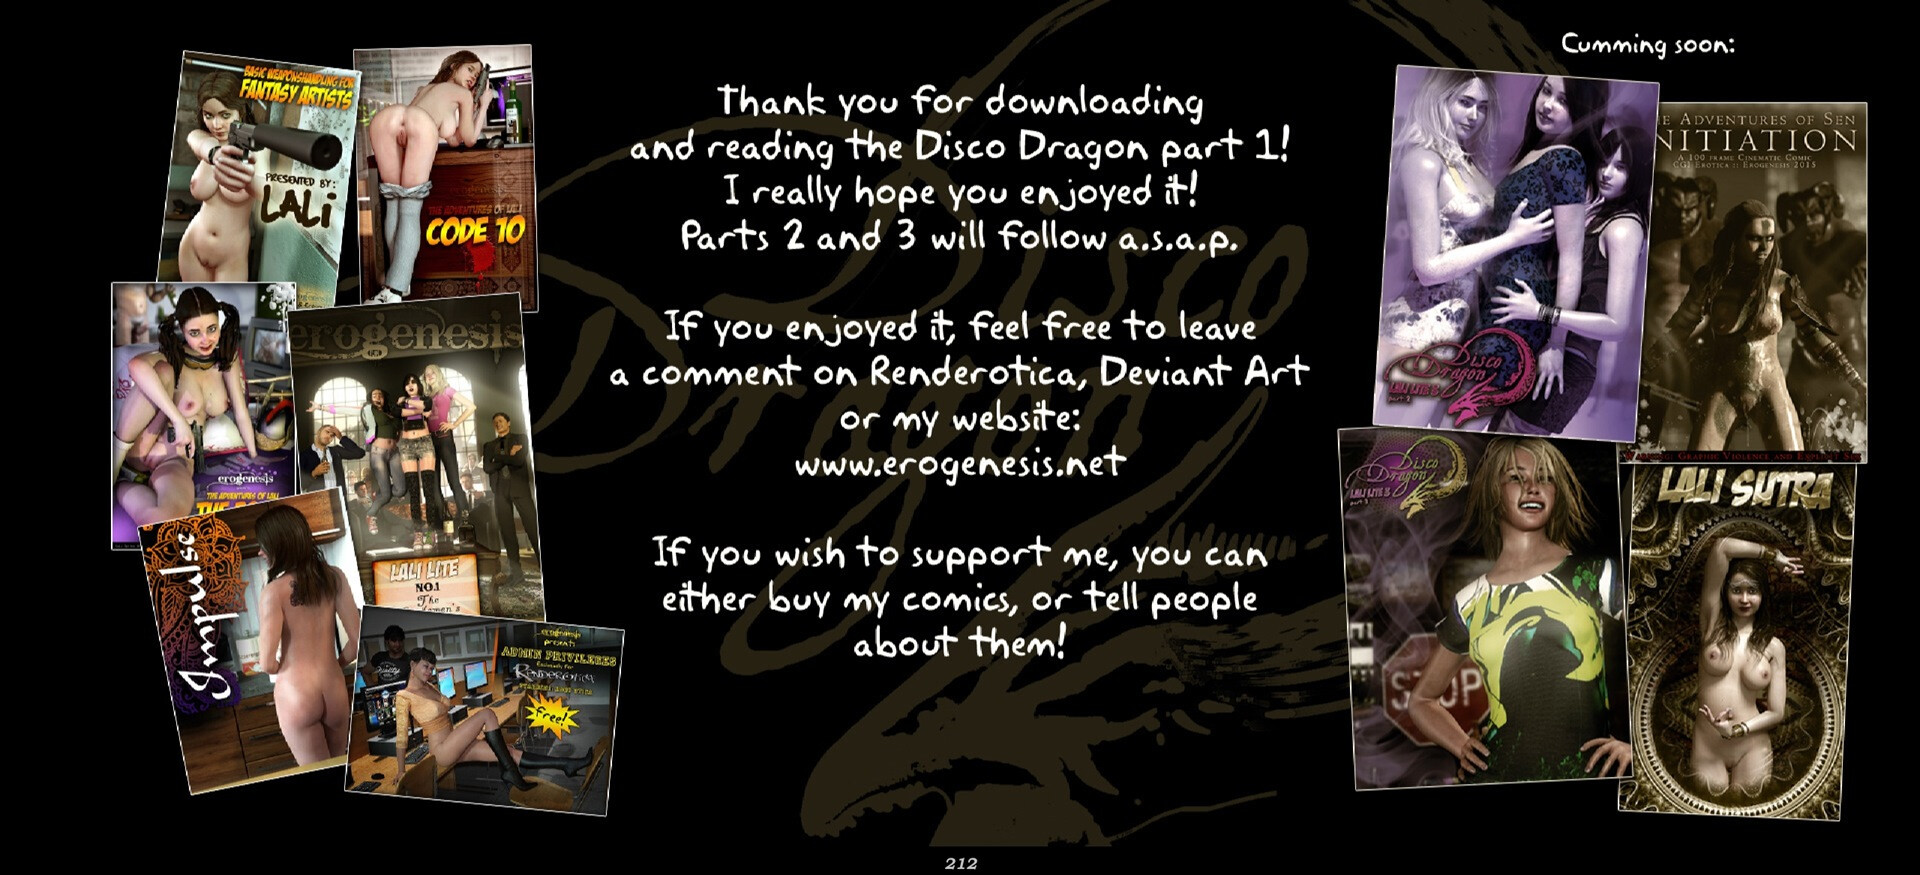 Lali Lite 3 - The Disco Dragon - Part 1 Screenshot